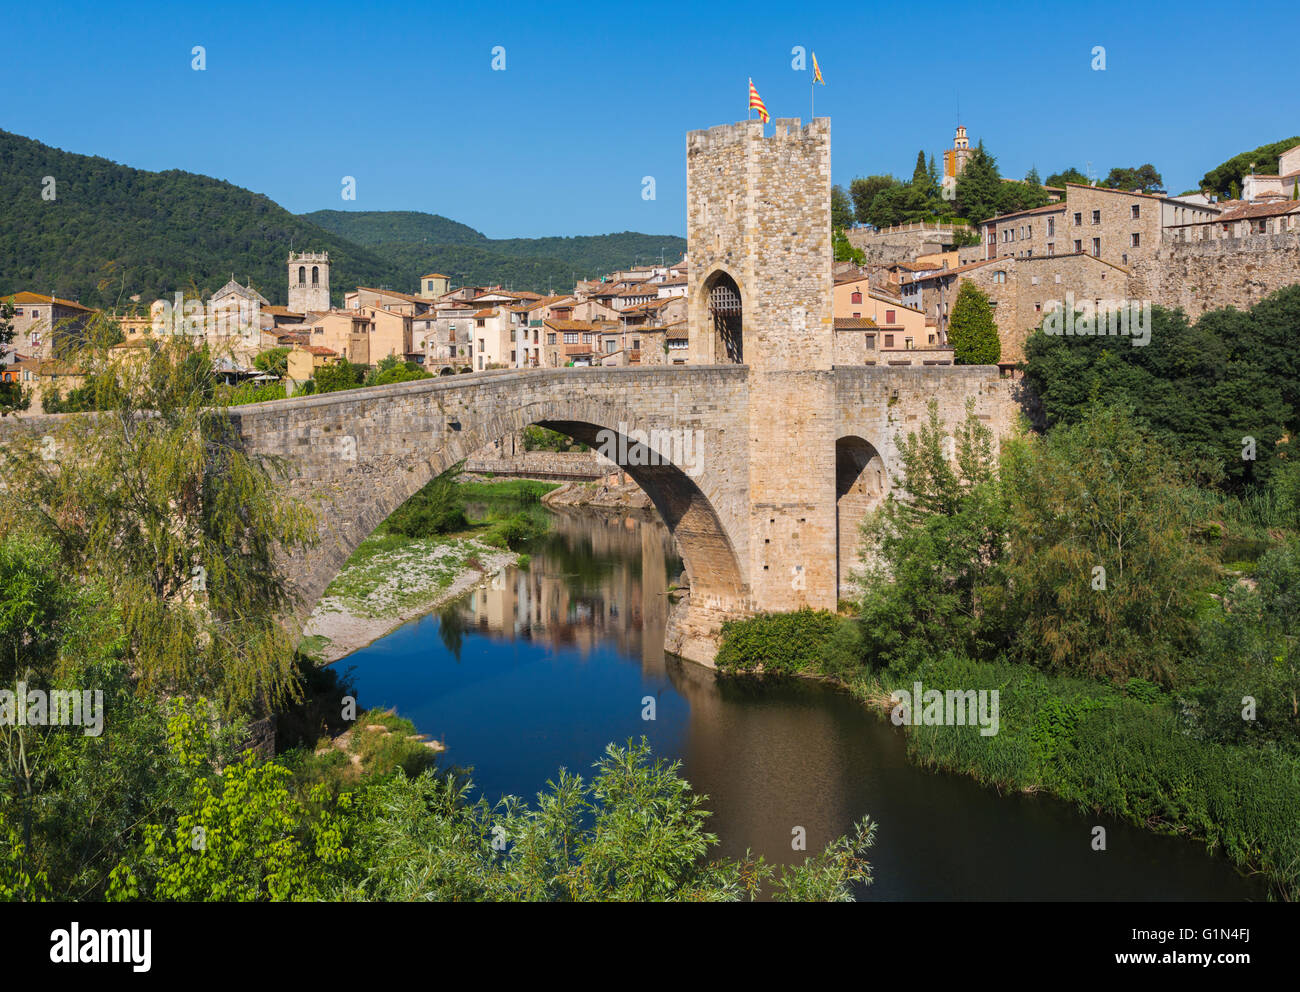 Besalu, province de Gérone, Catalogne, Espagne. Pont fortifié connu comme El Pont Vell, le Vieux Pont, traversée de la rivière Fluvia. Banque D'Images